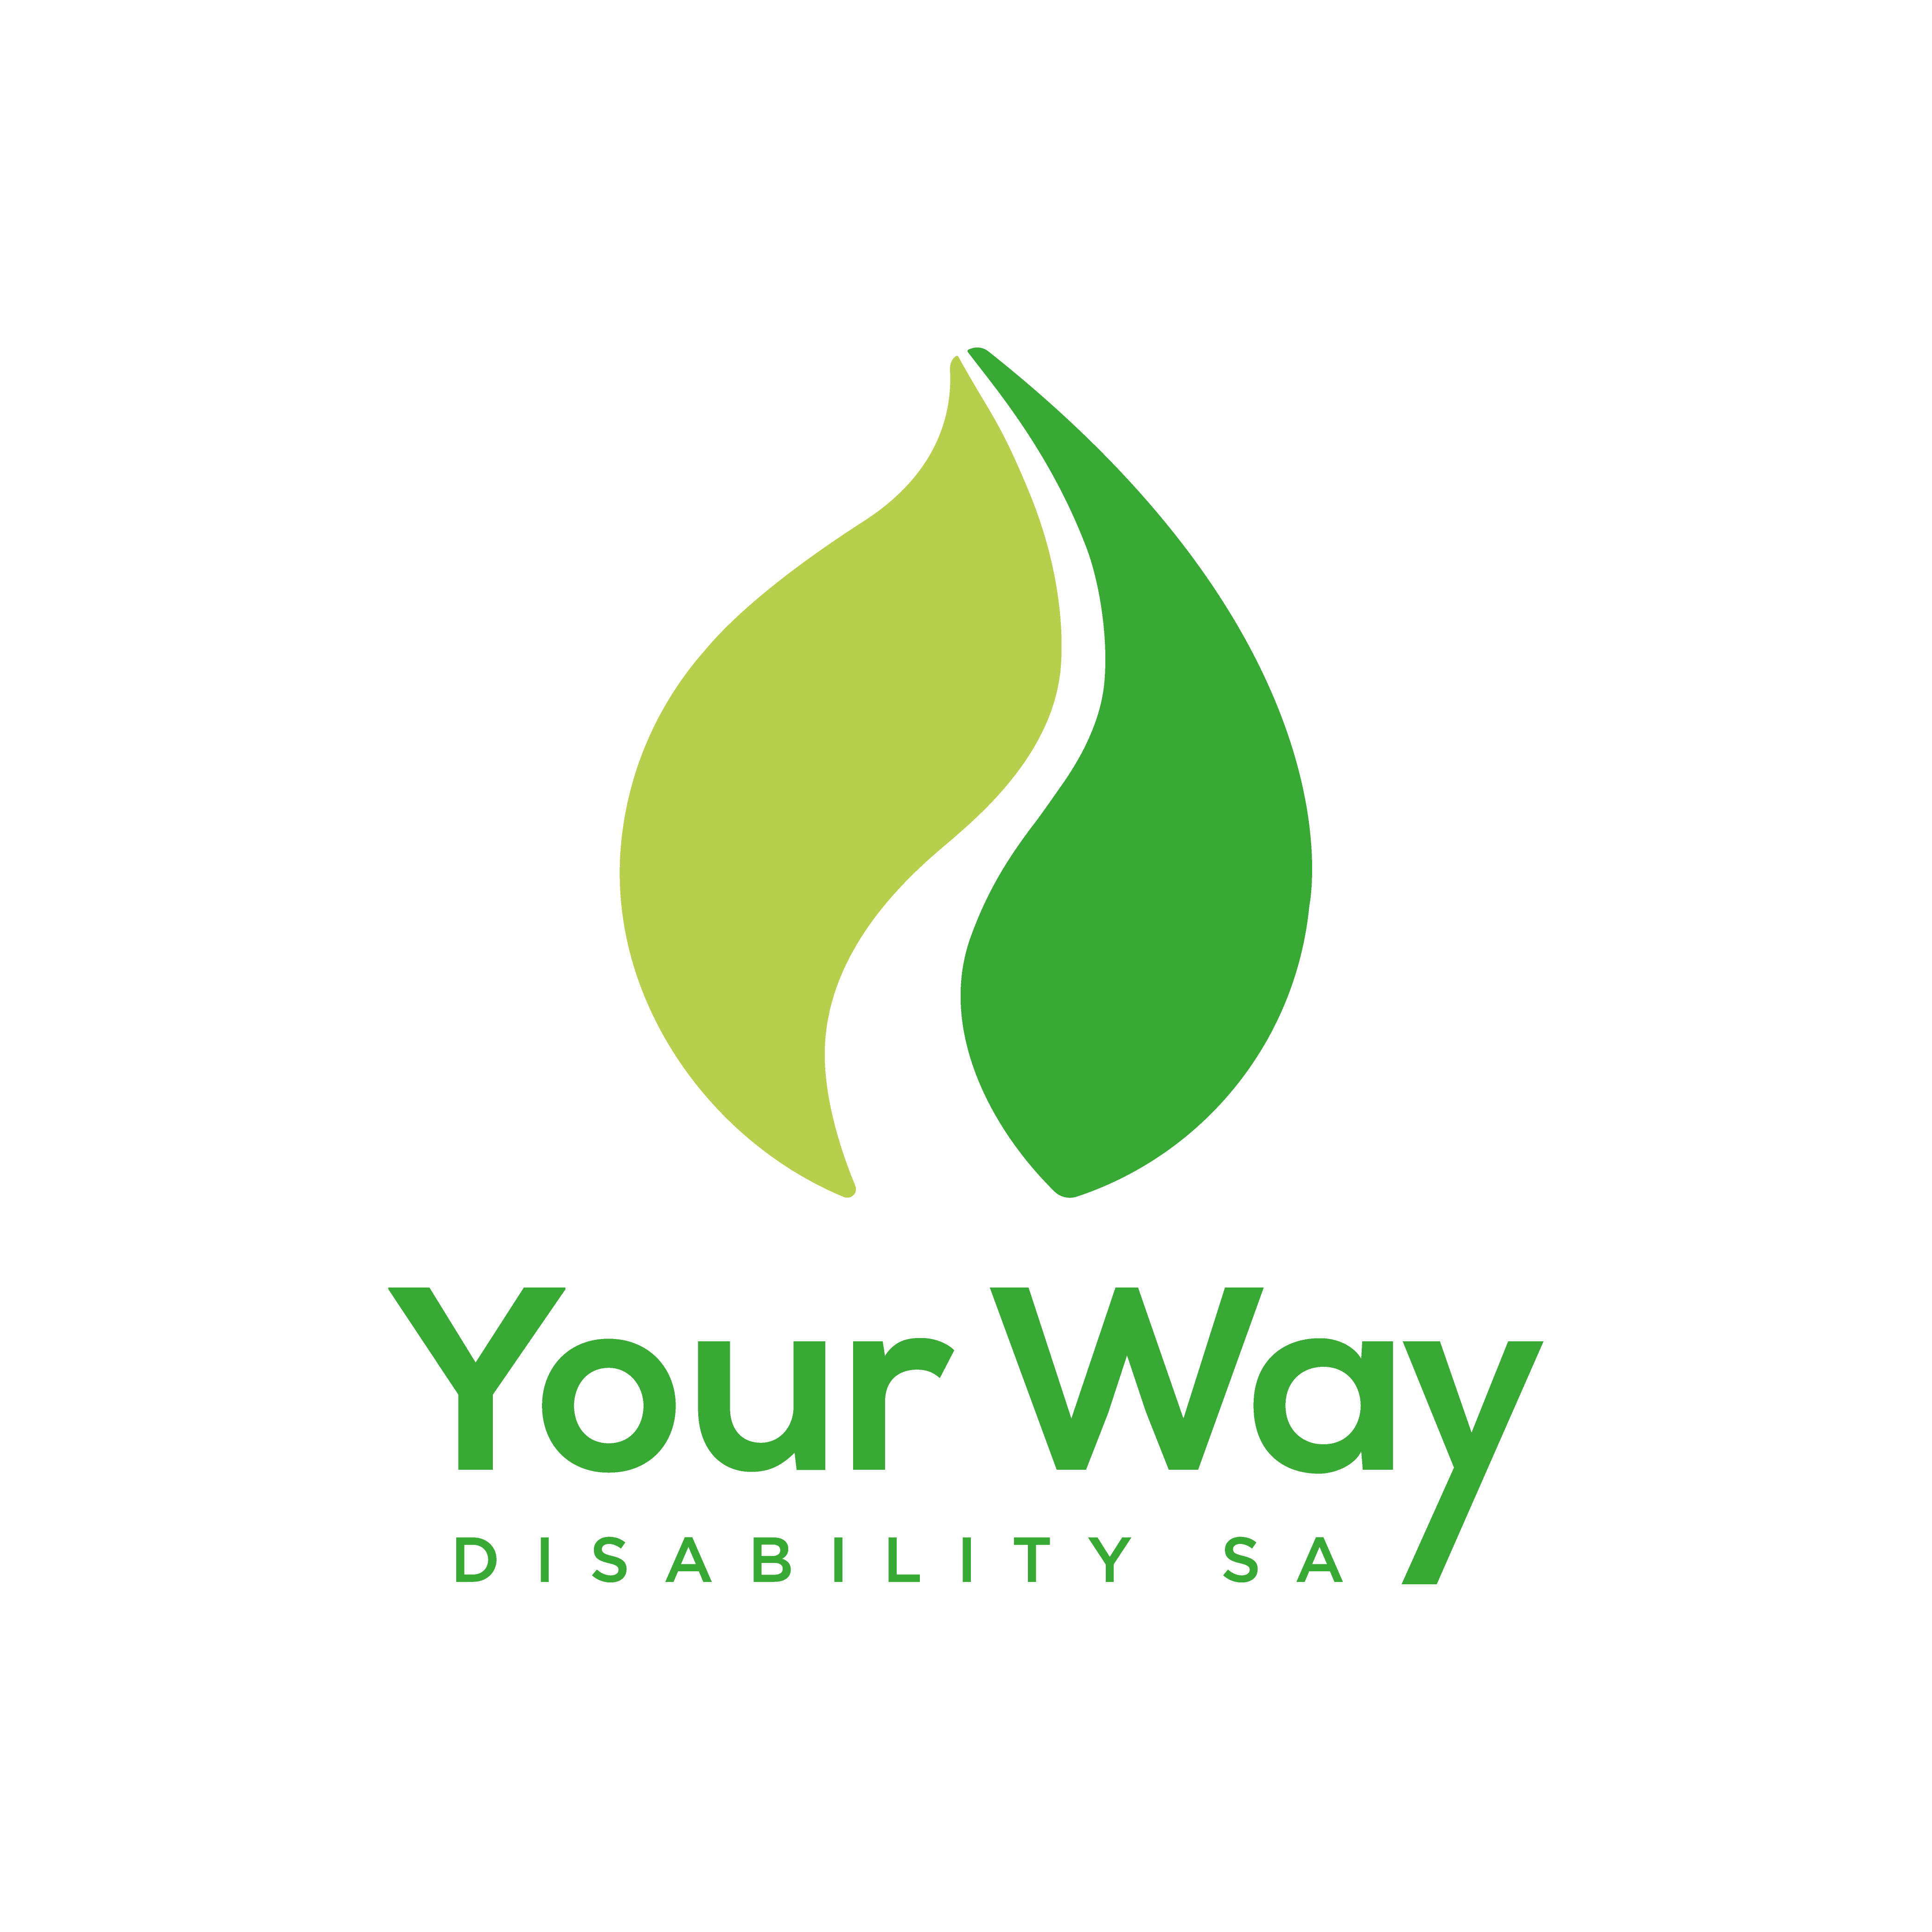 Your Way Disability SA